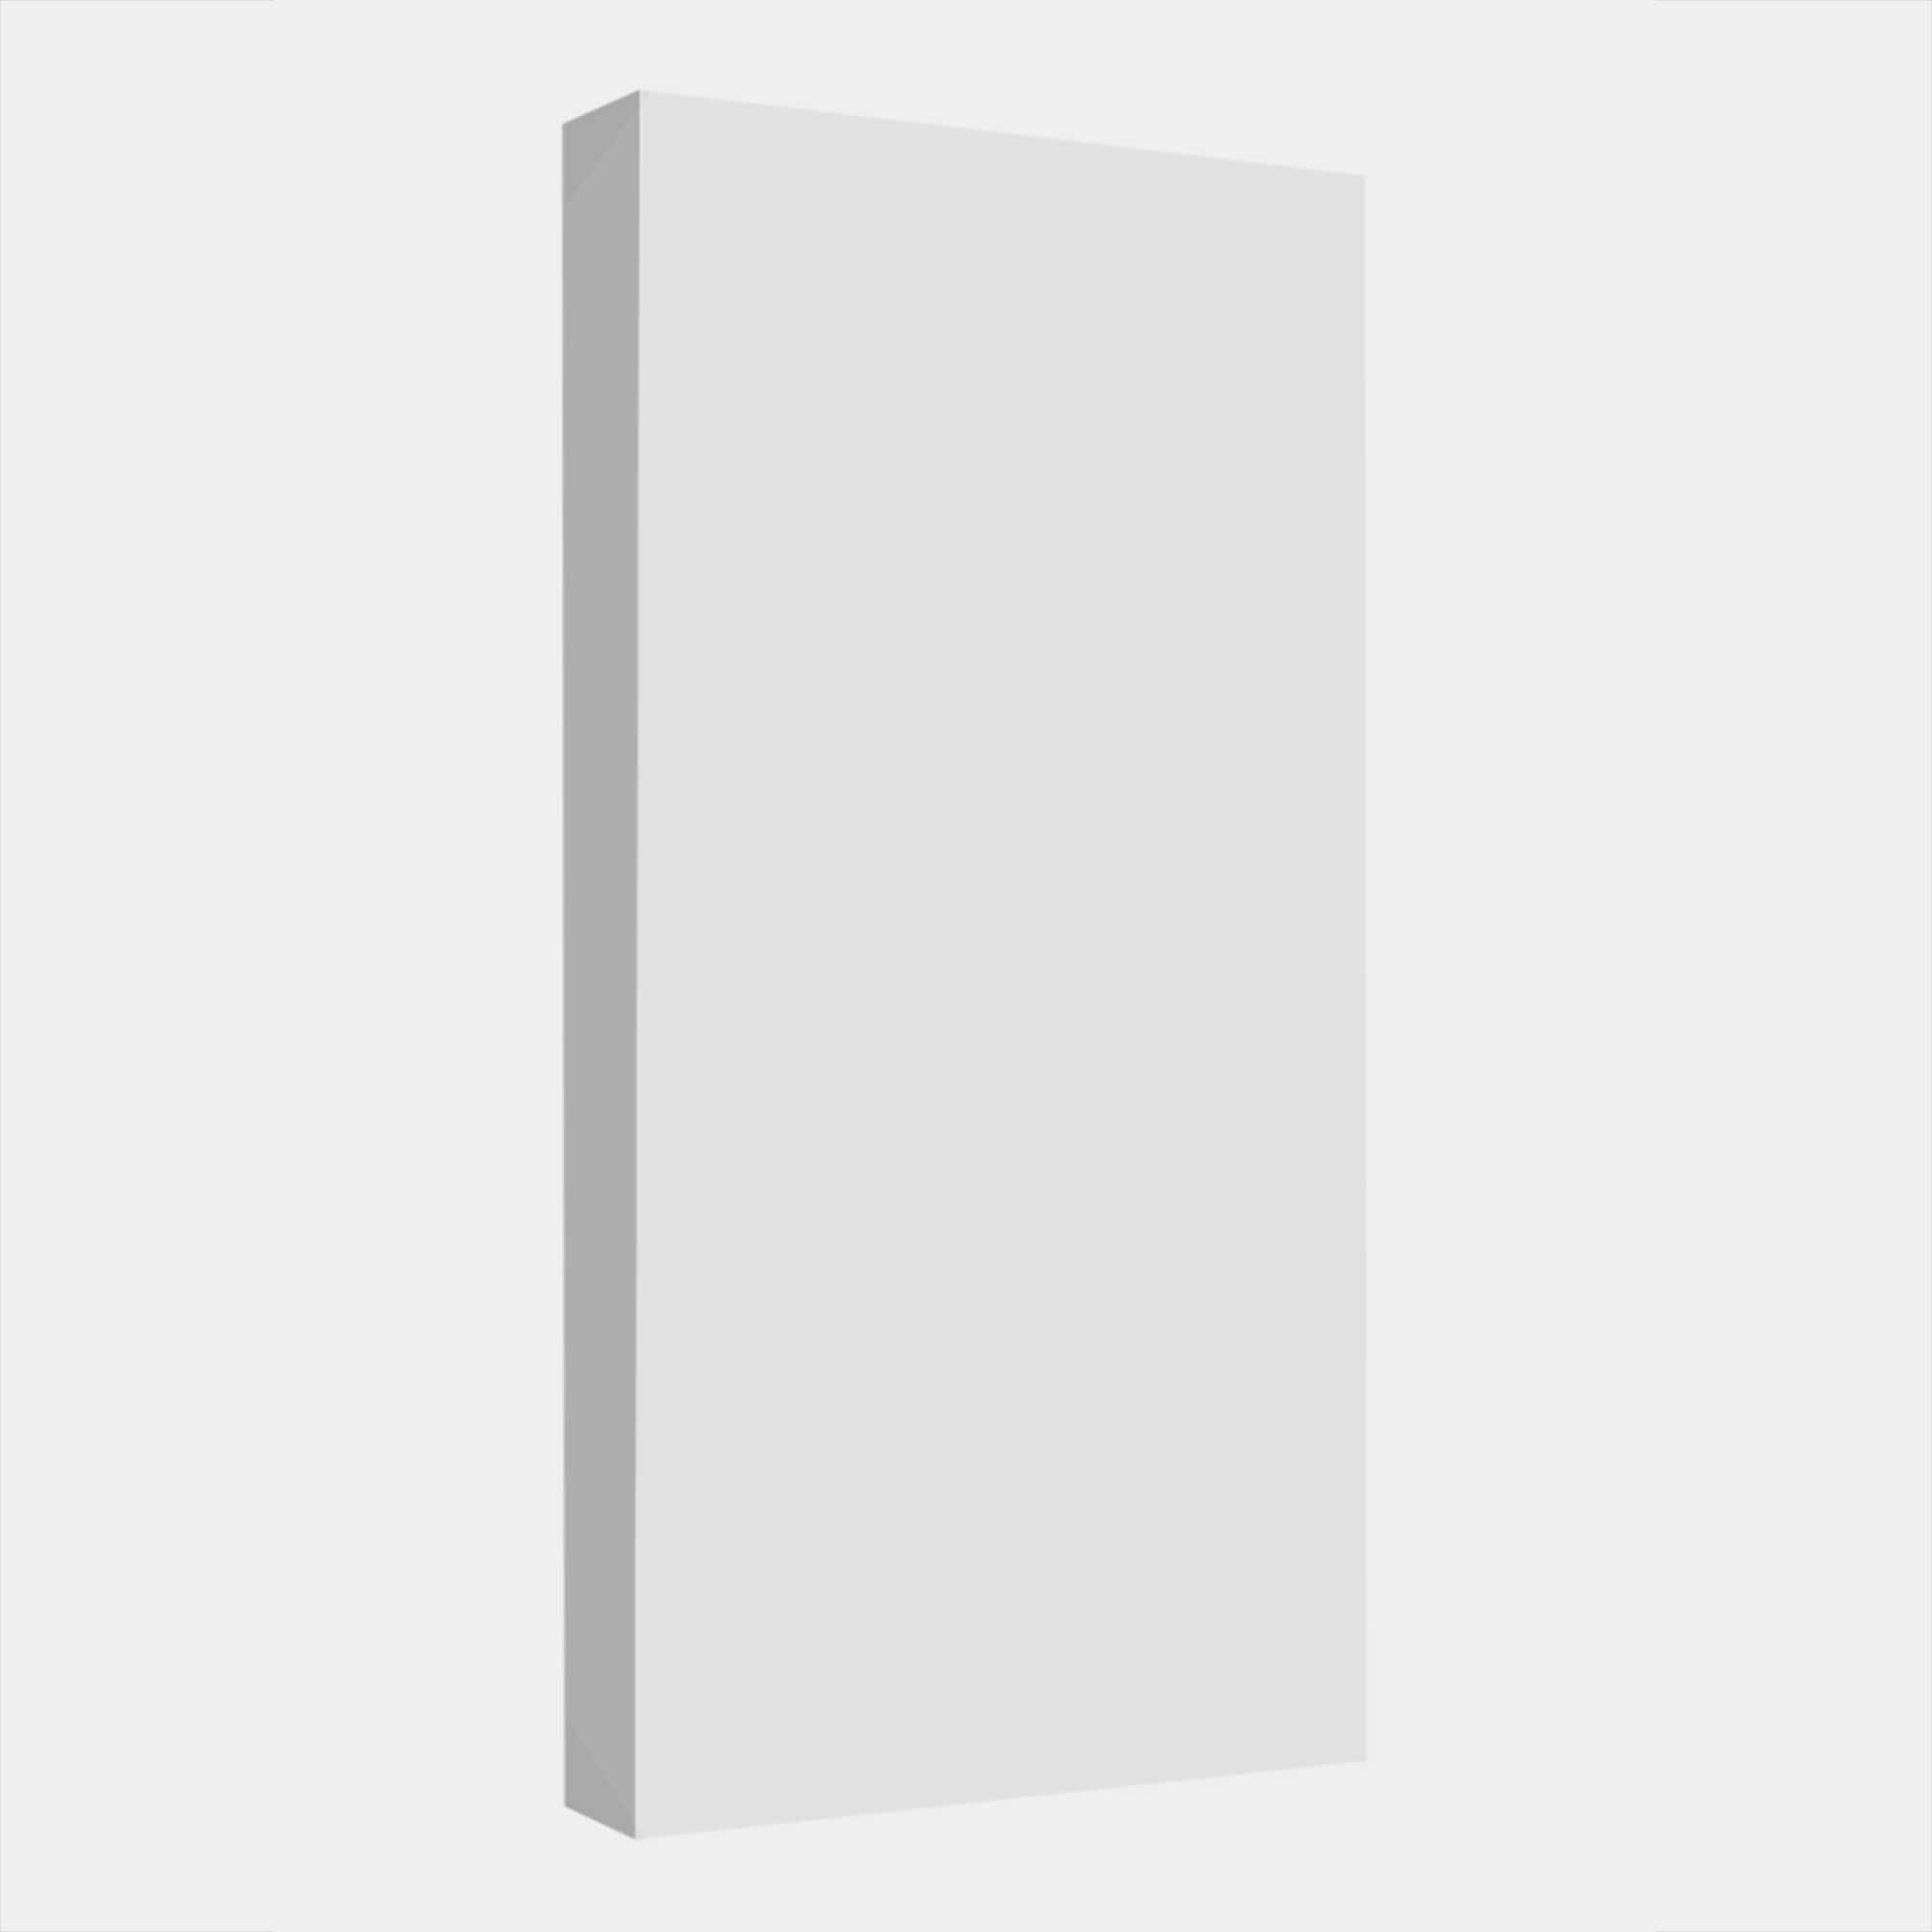 Panele Akustyczne Absorbery Premium 100x50x11 cm Biały